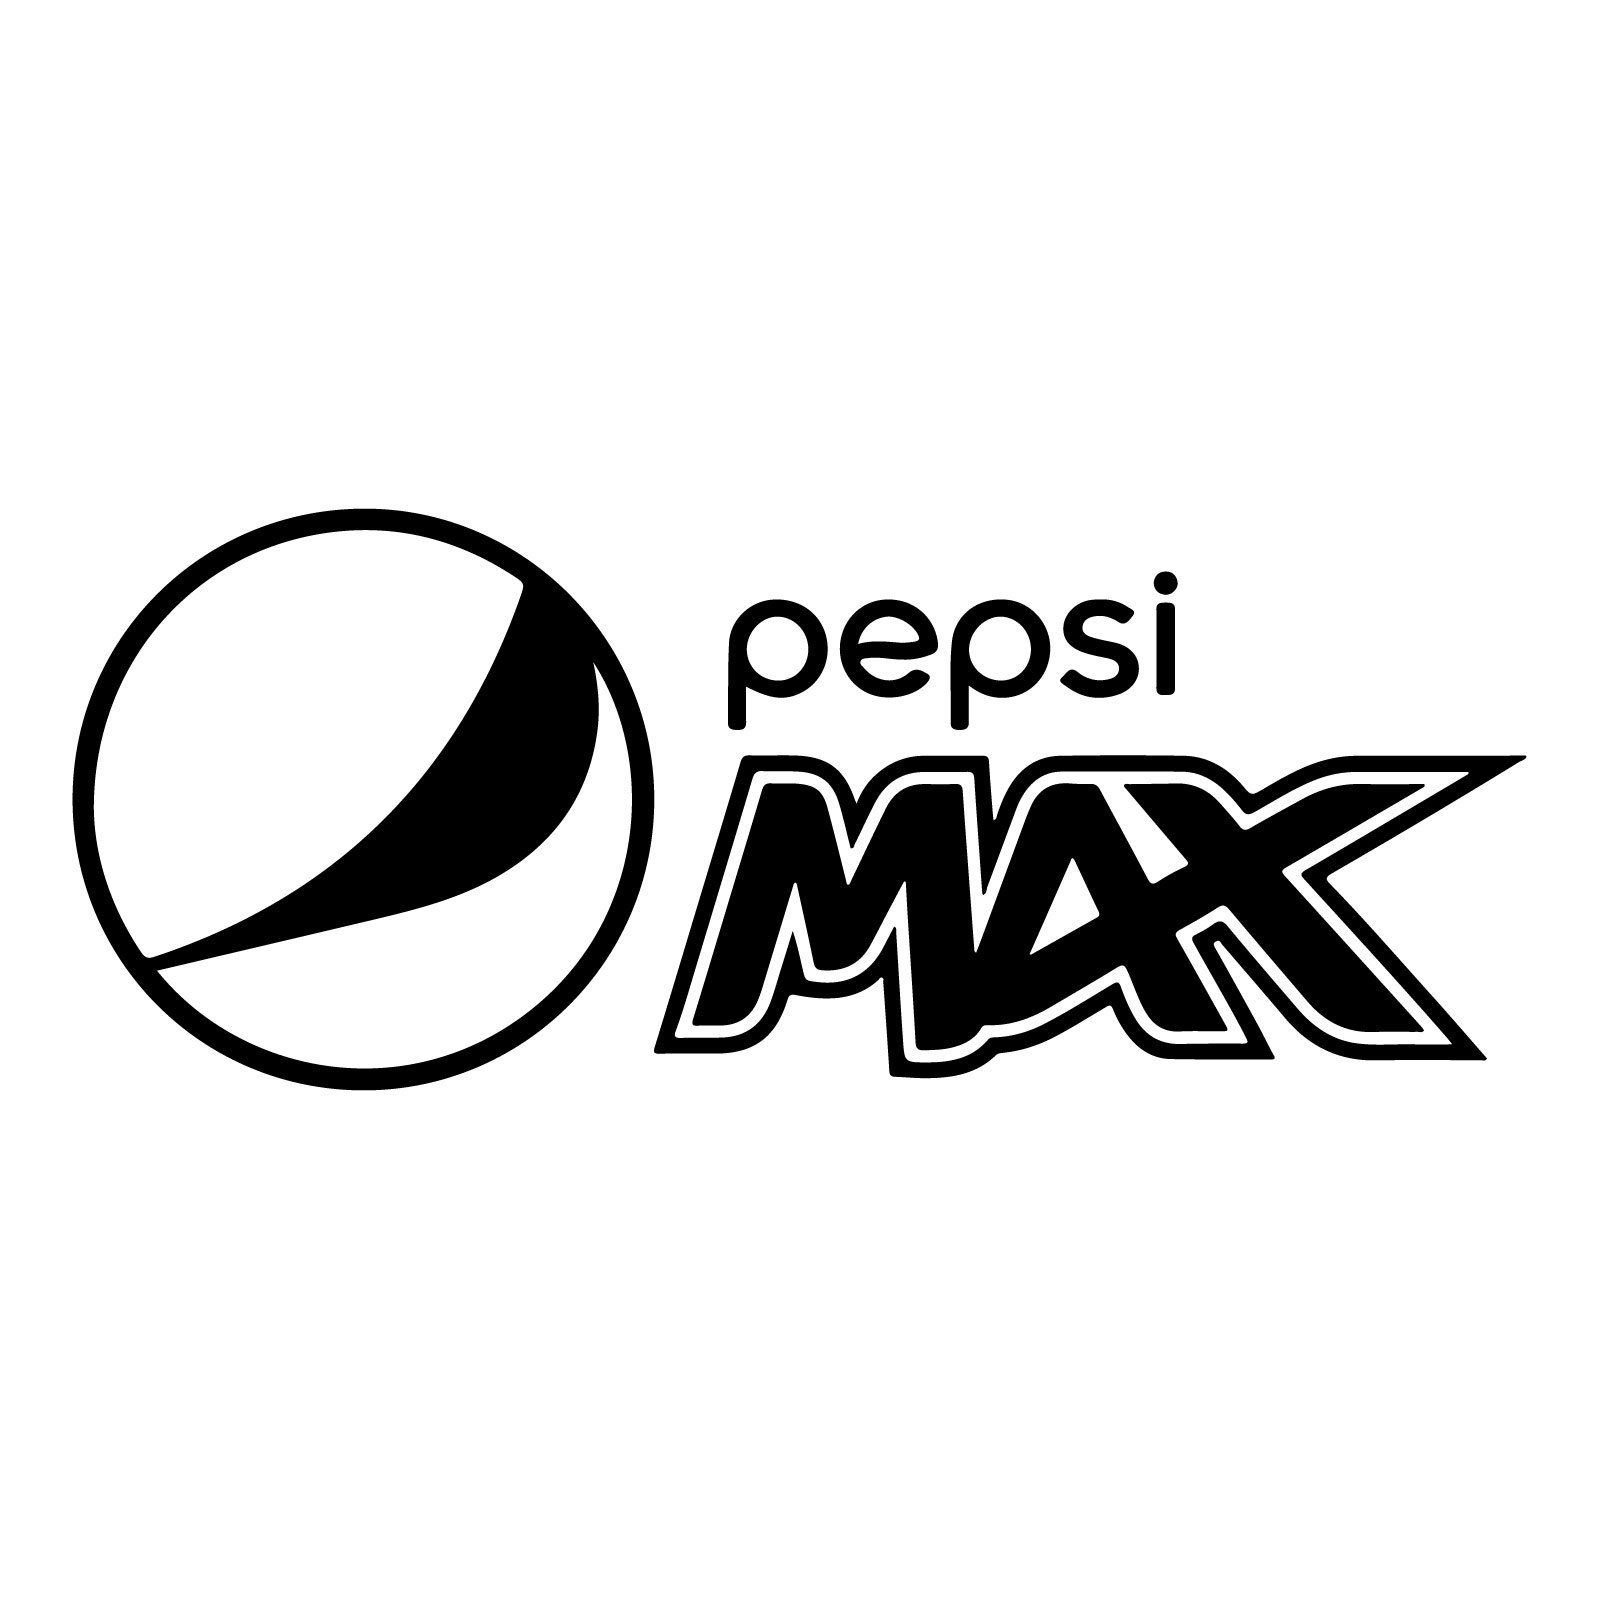 Pepsi Max logo 2